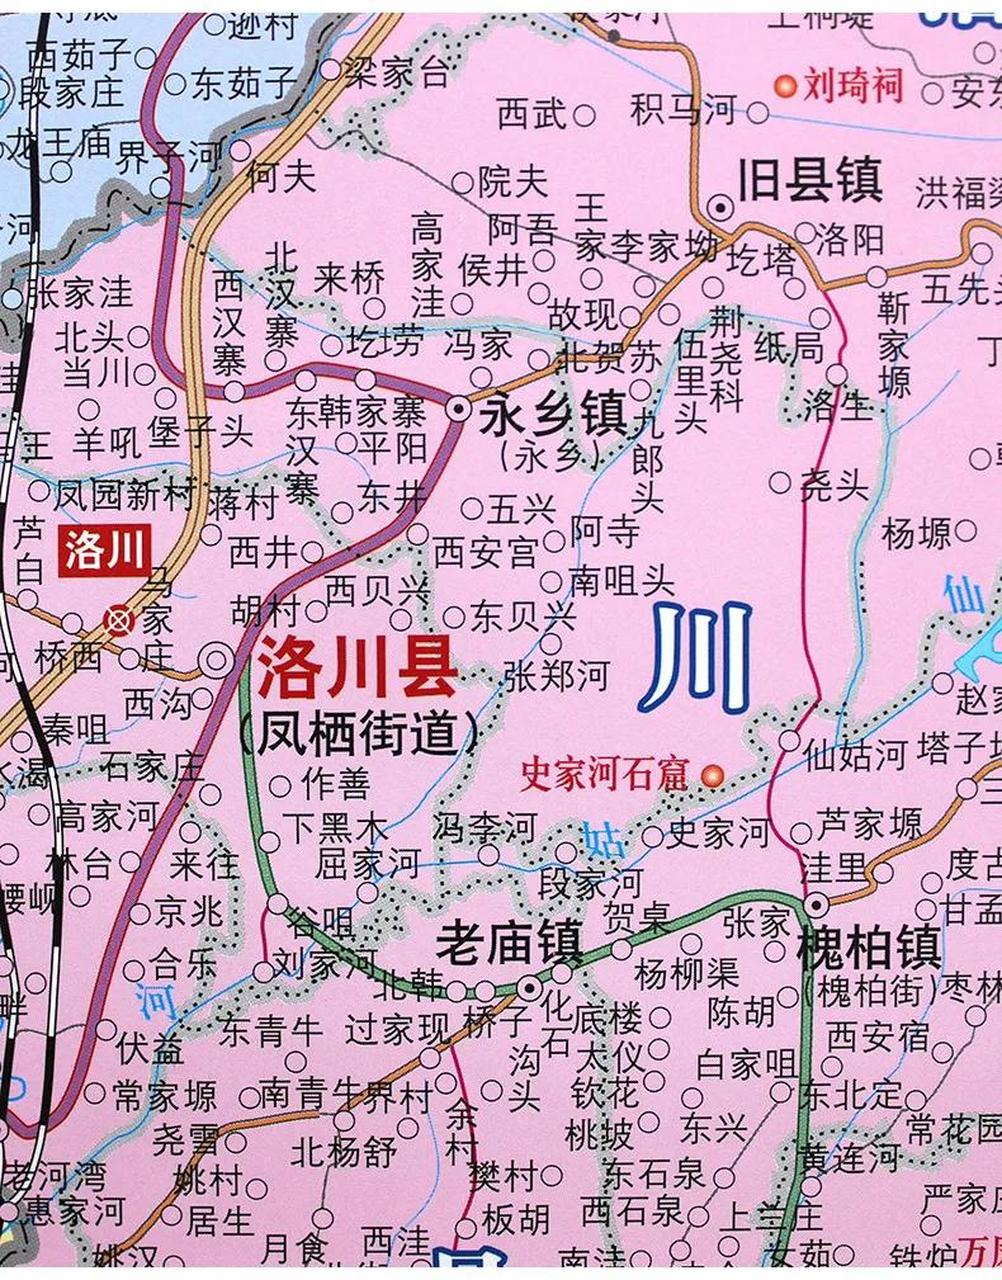 洛川县旧县镇有两个彼此呼应的城池,一个是旧